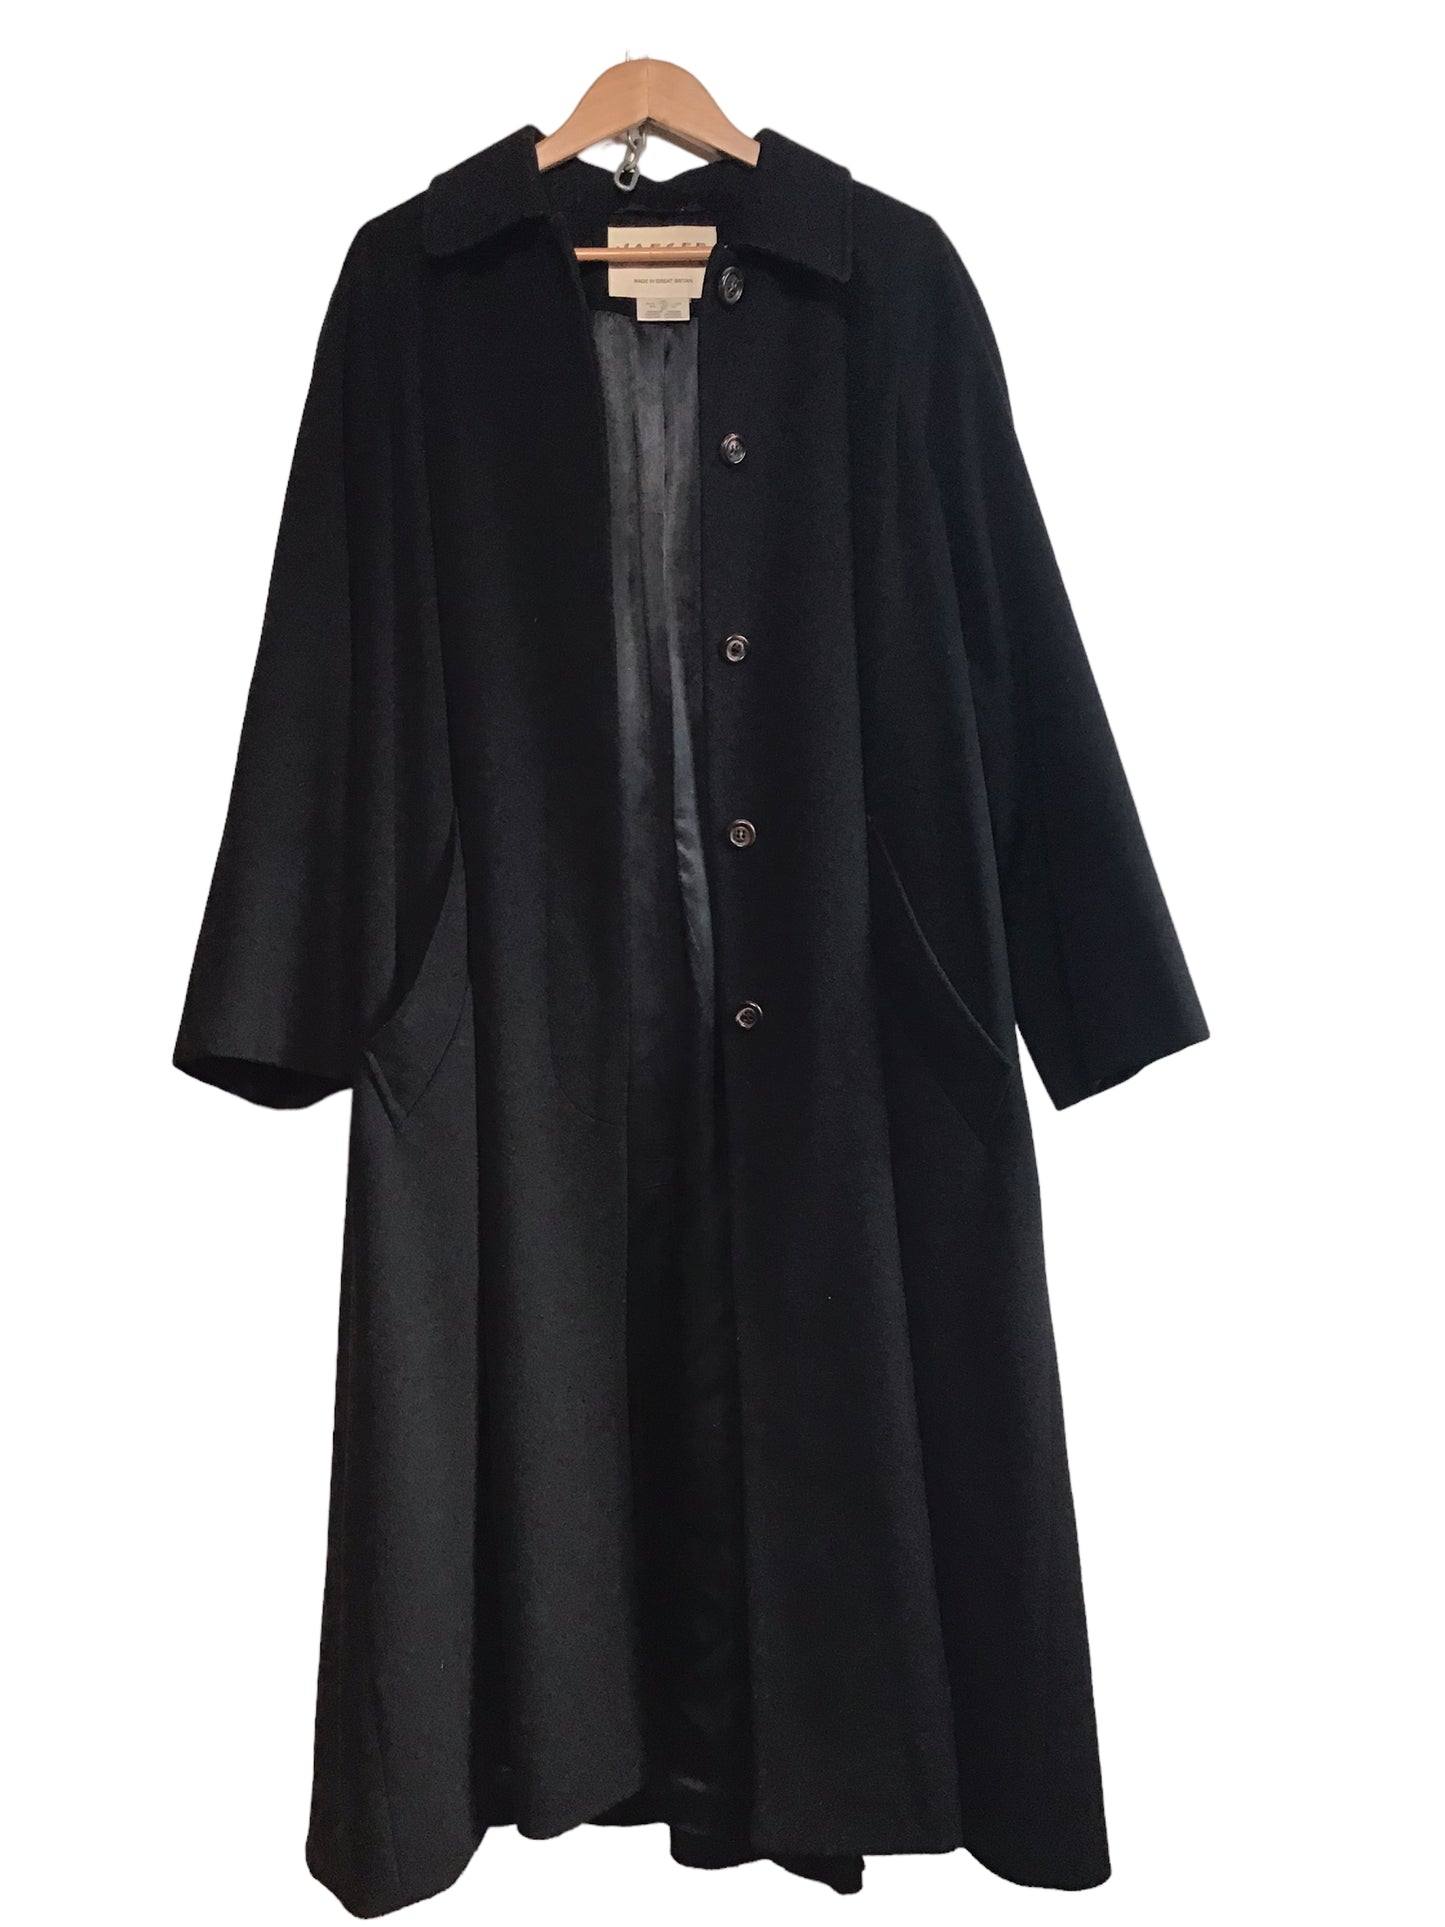 Bodner Elem Black Long Lined Wool & Cashmere Coat (Size L)